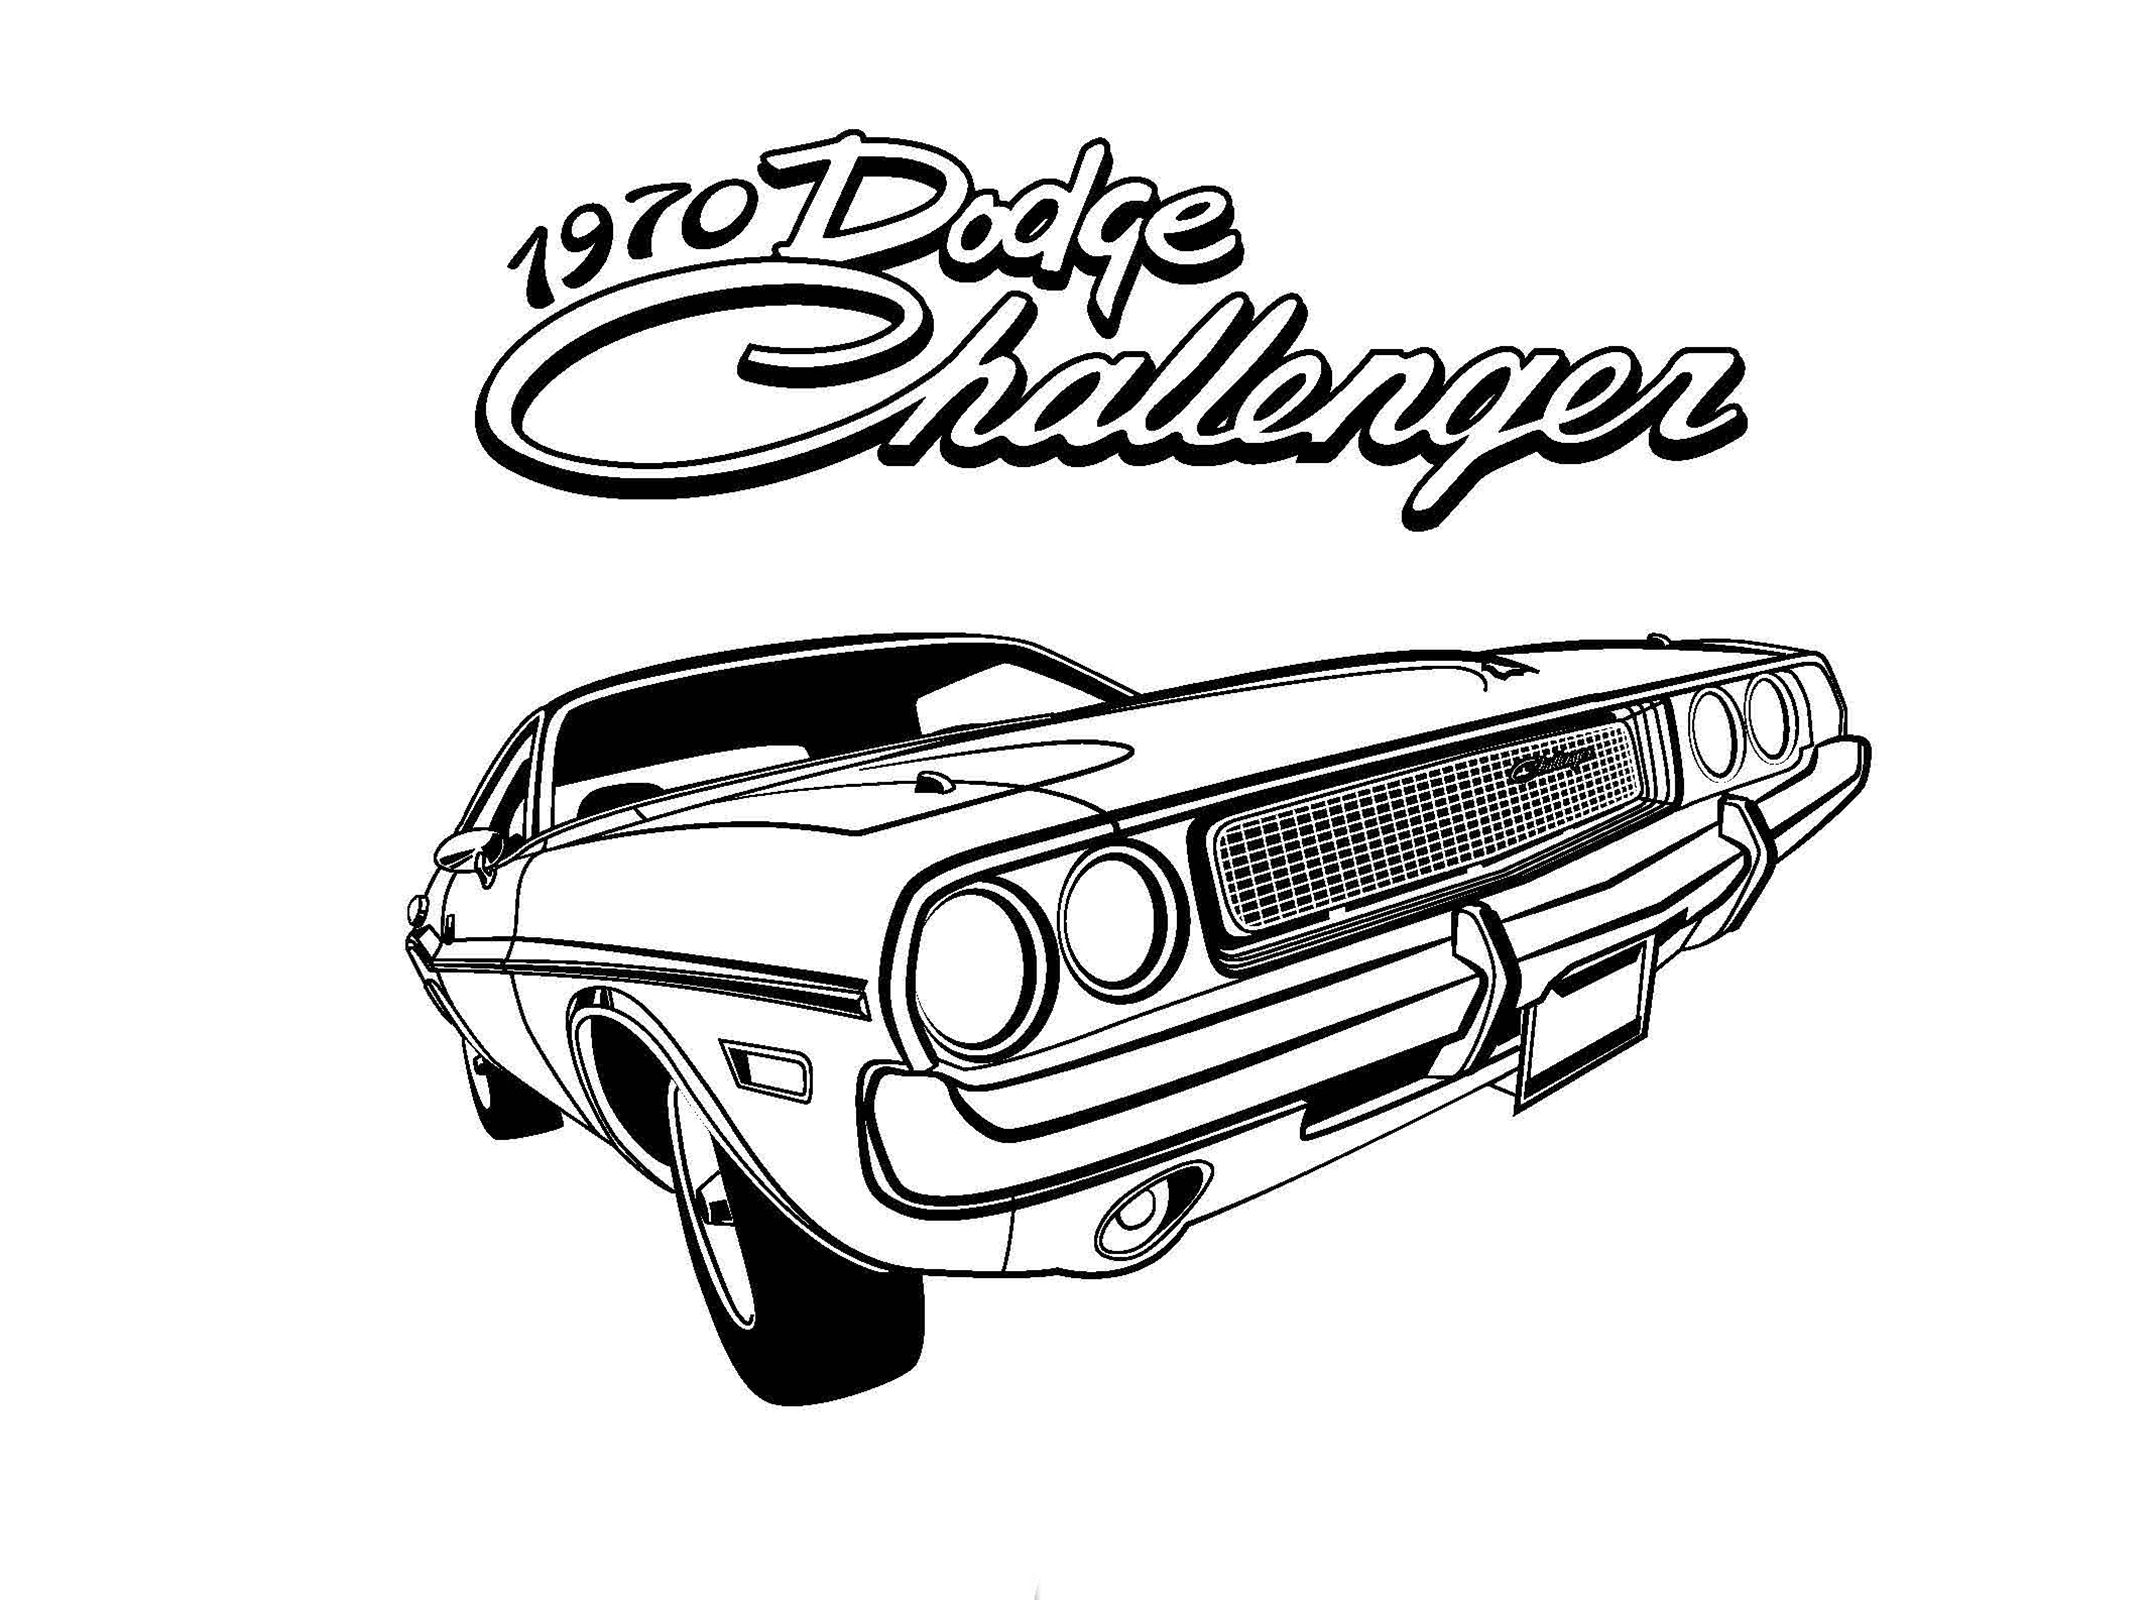 1970 Dodge Challenger vector car illustration